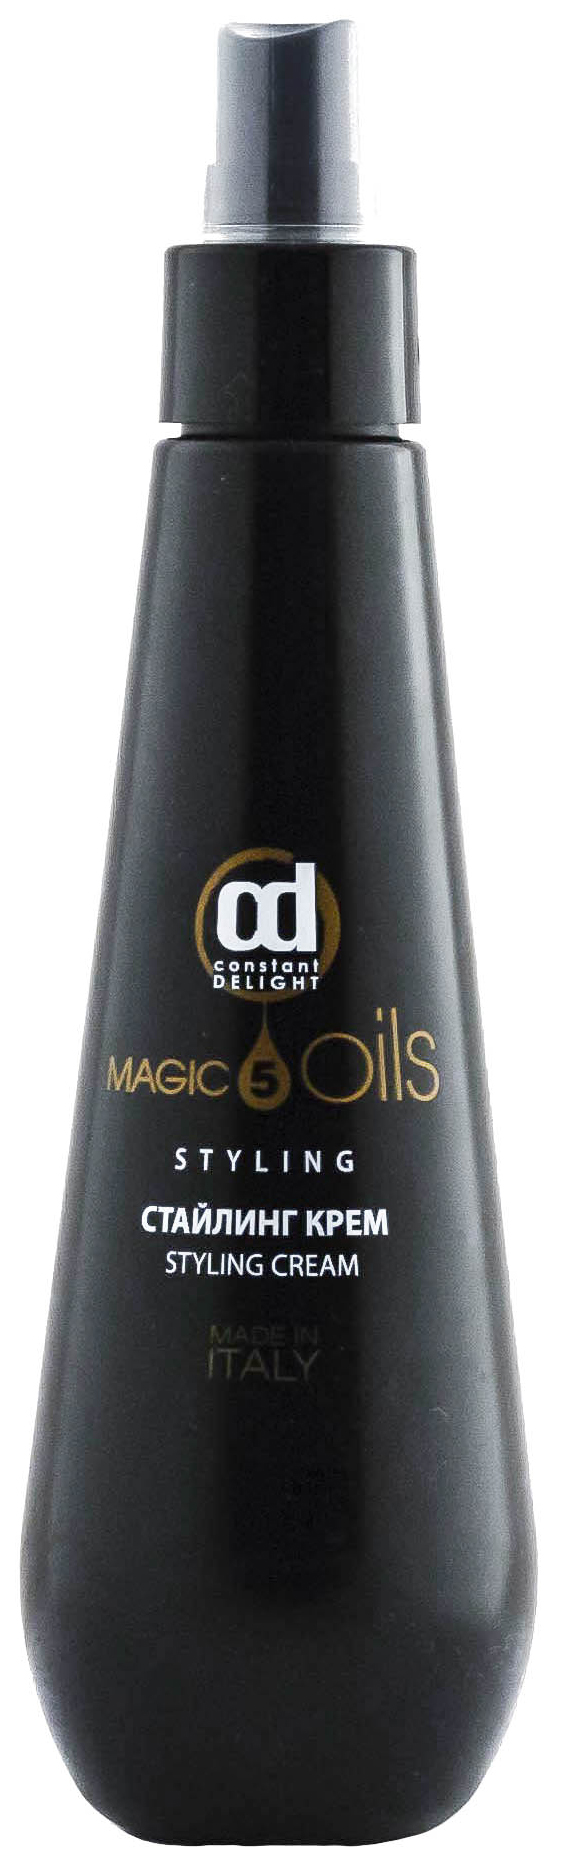 Средство для укладки волос Constant Delight 5 Magic Oils 200 мл